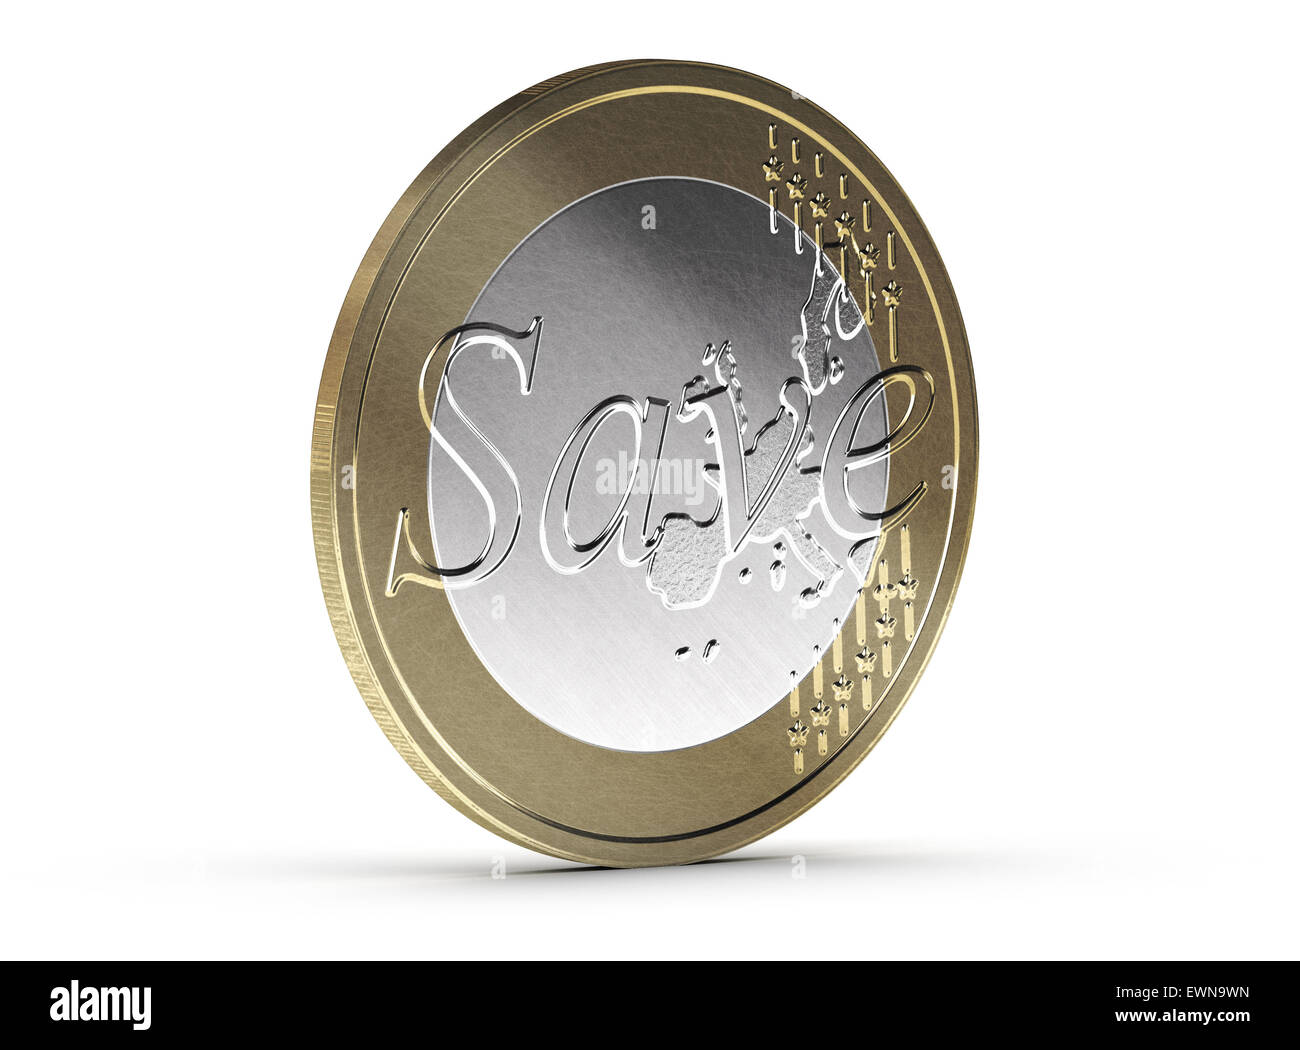 Sparen Sie Euro-Münze auf weißem Hintergrund mit Schatten und Kratzer. Konzeptbild zur Veranschaulichung von Geld sparen. Finanzen-conce Stockfoto